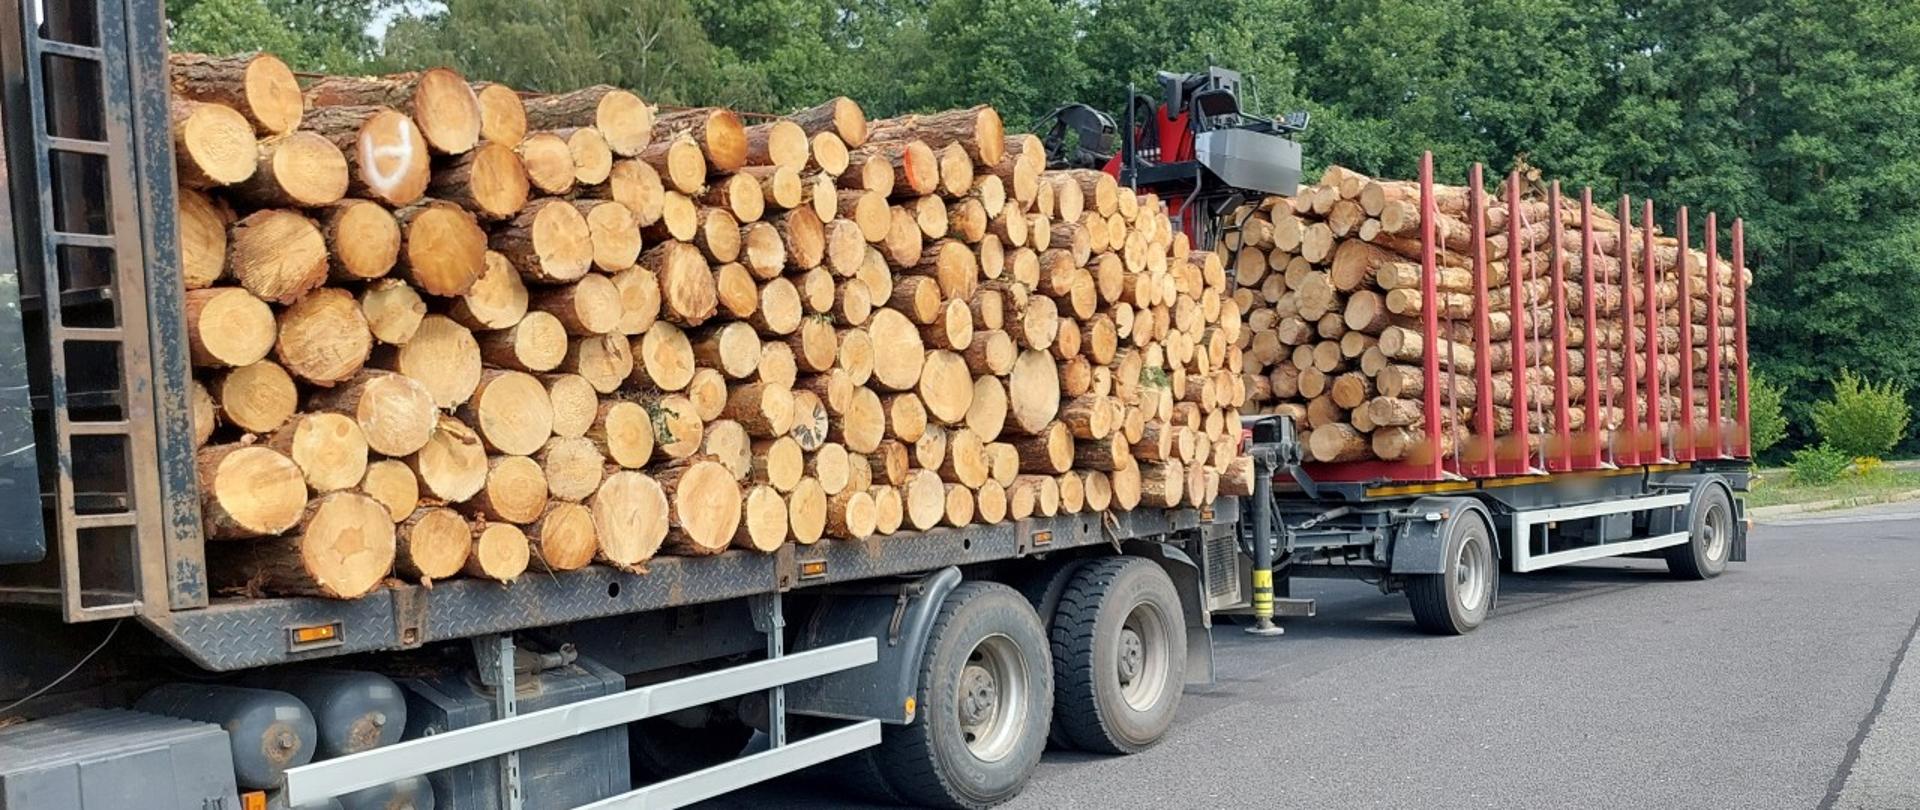 Kłody drewna przewożone na samochodzie ciężarowym były źle umieszczone. Ładunek stwarzał zagrożenie dla bezpieczeństwa ruchu drogowego.